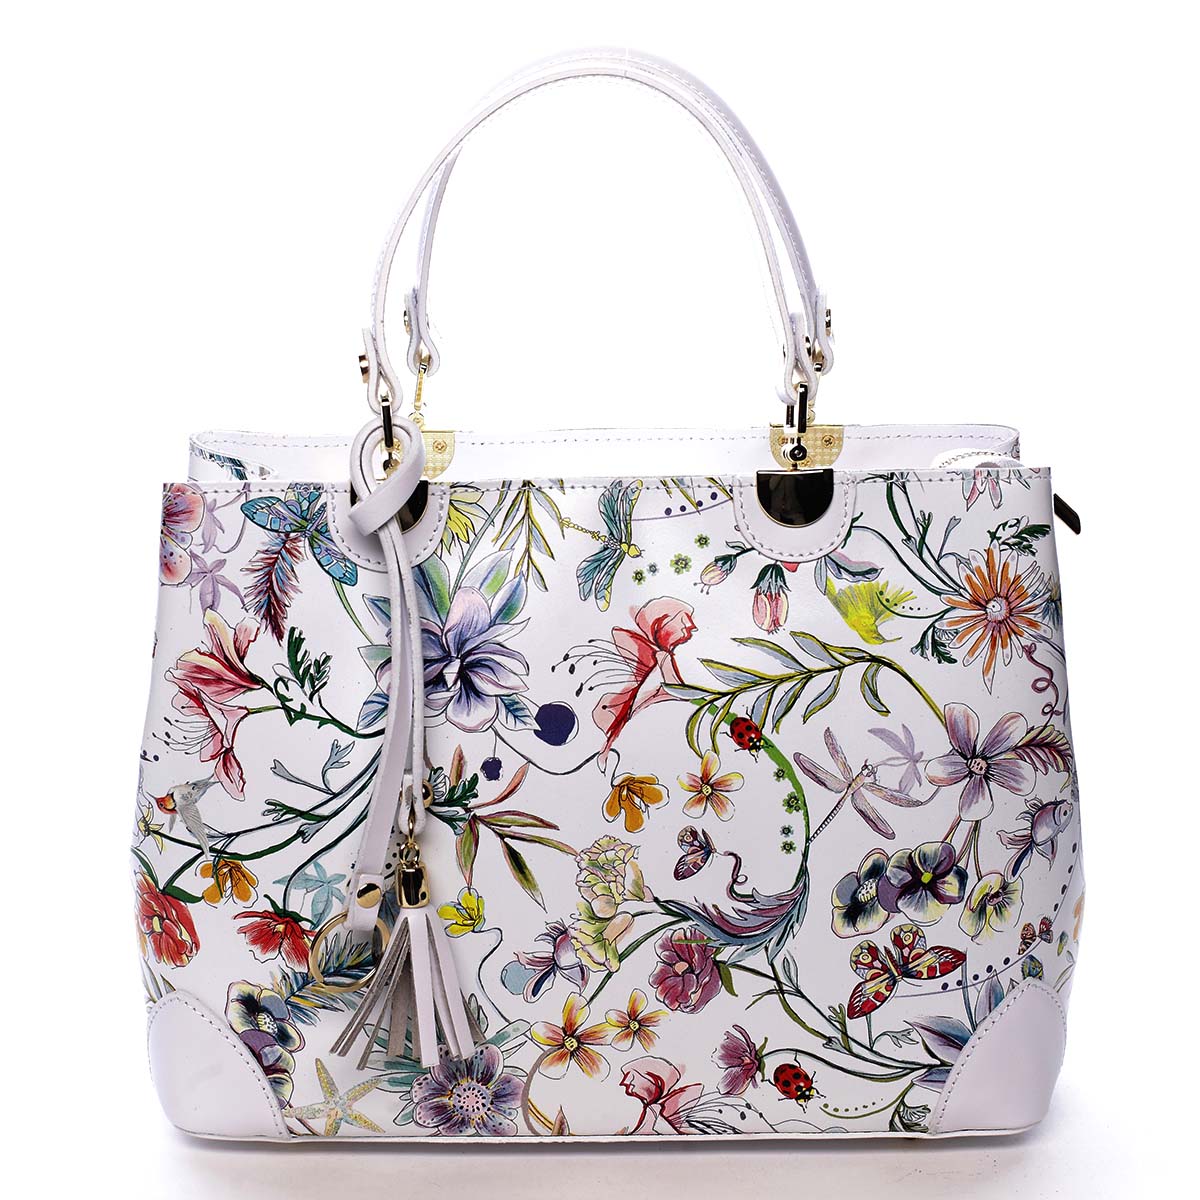 Originální dámská kožená kabelka květinová bílá - ItalY Mattie